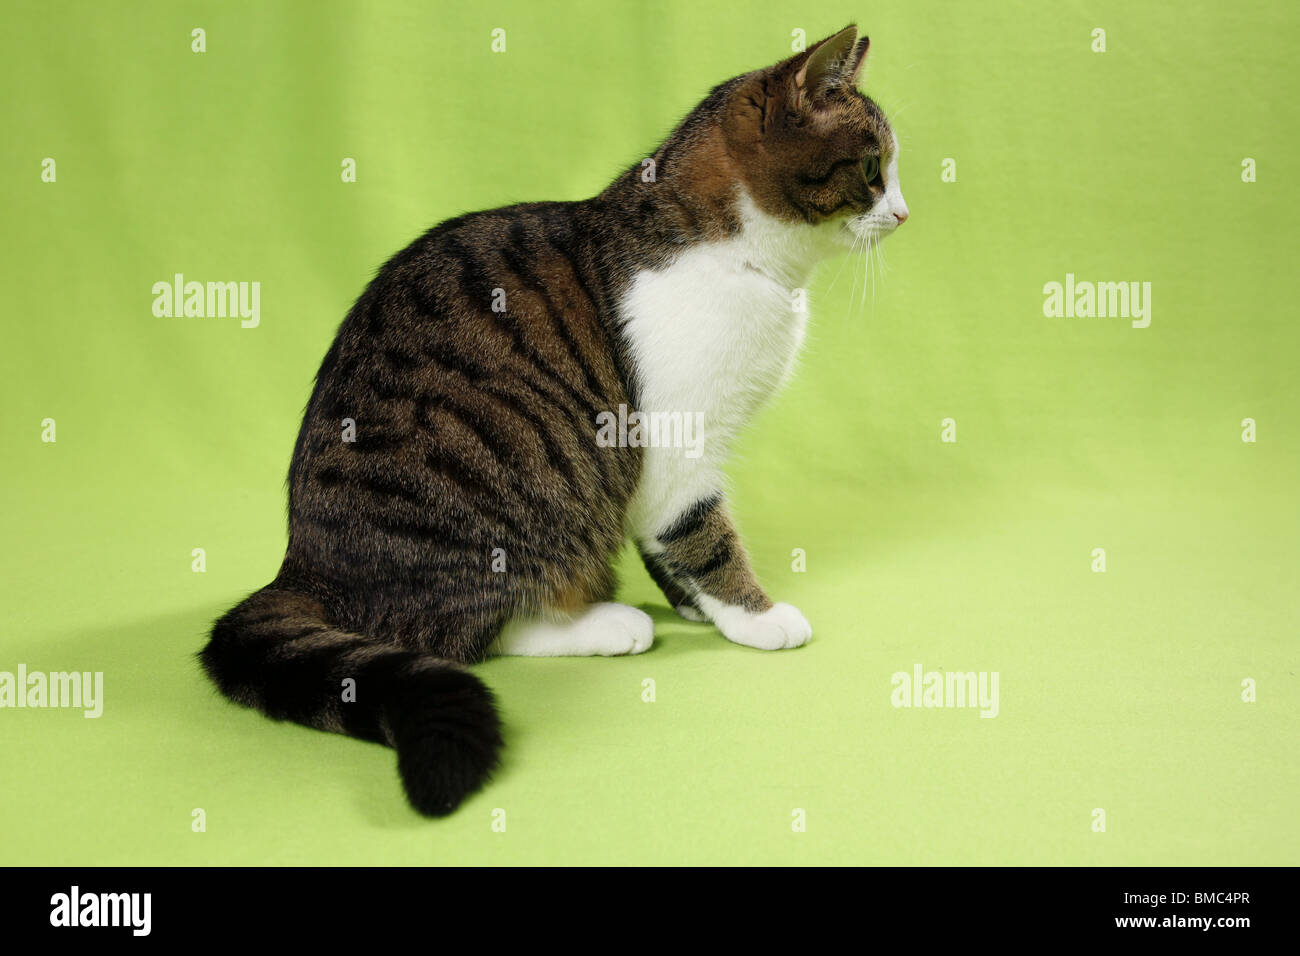 sitzende Katze / sitting cat Stock Photo